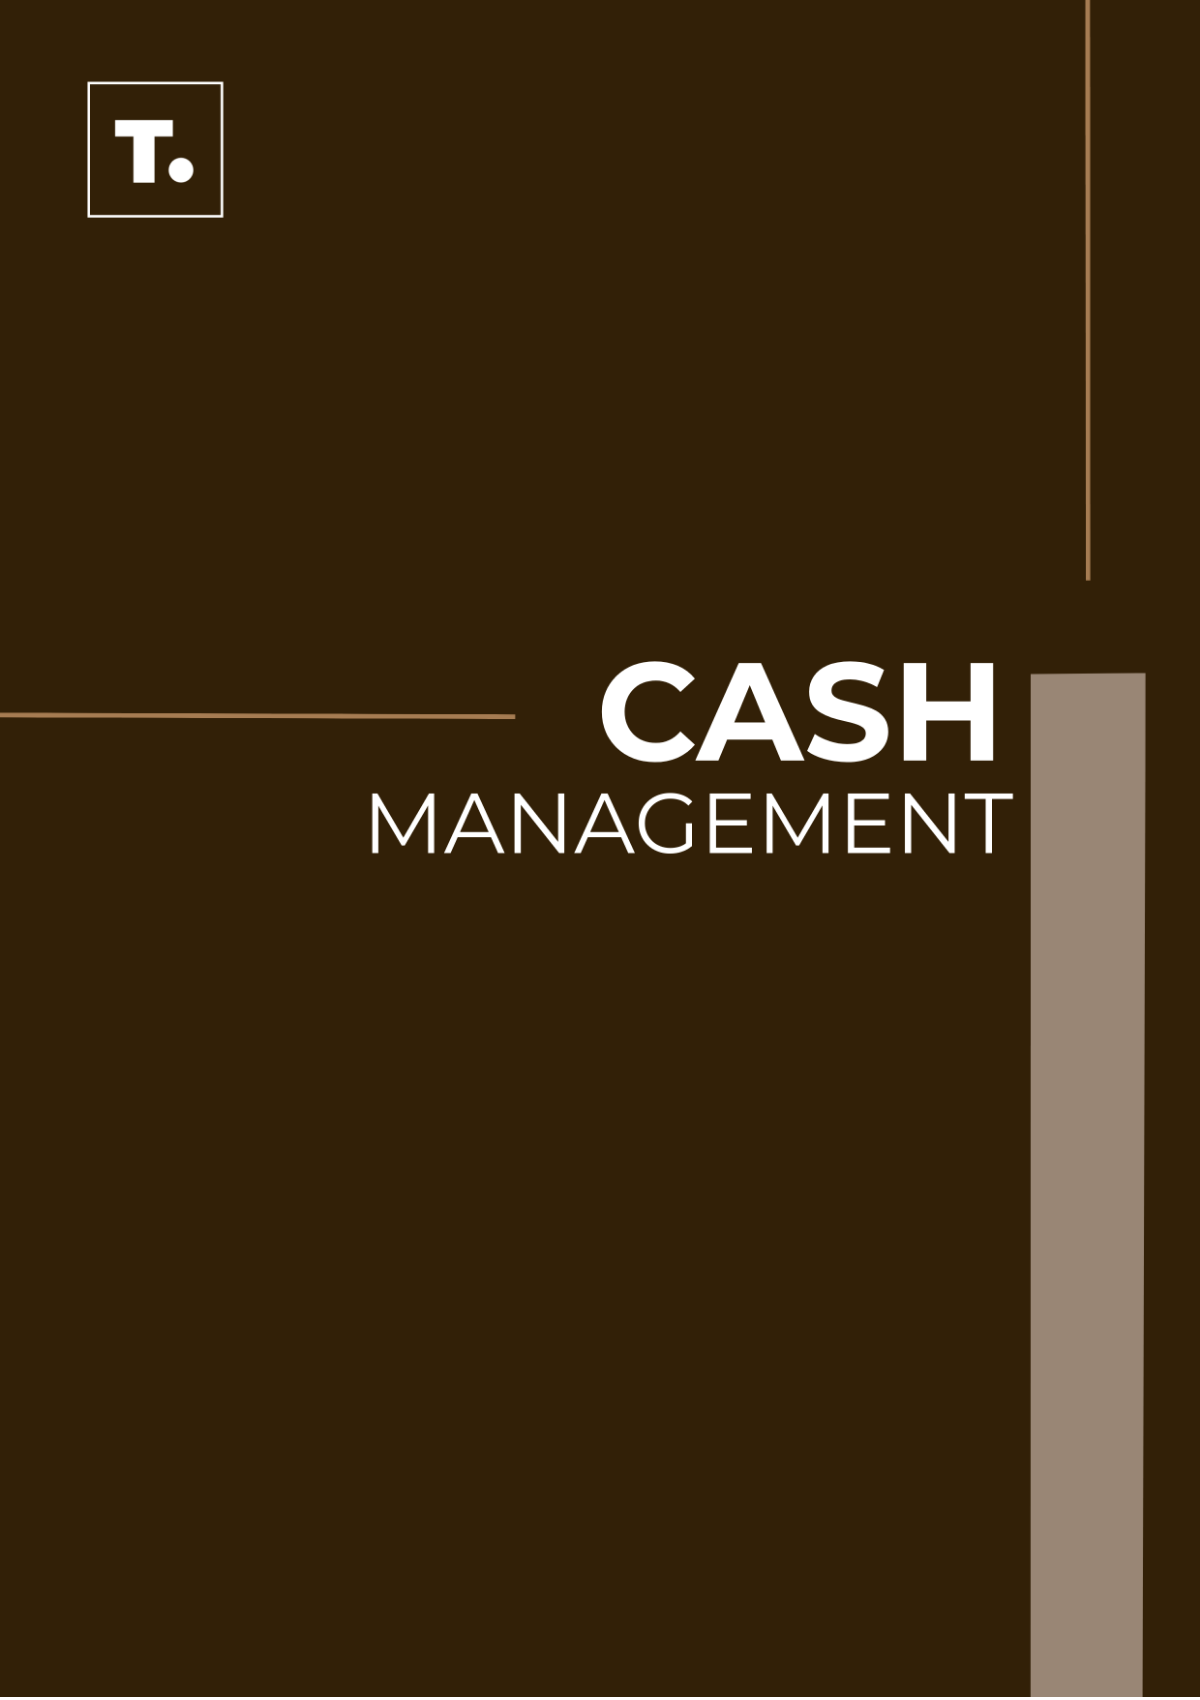 Cash Management SOP Template